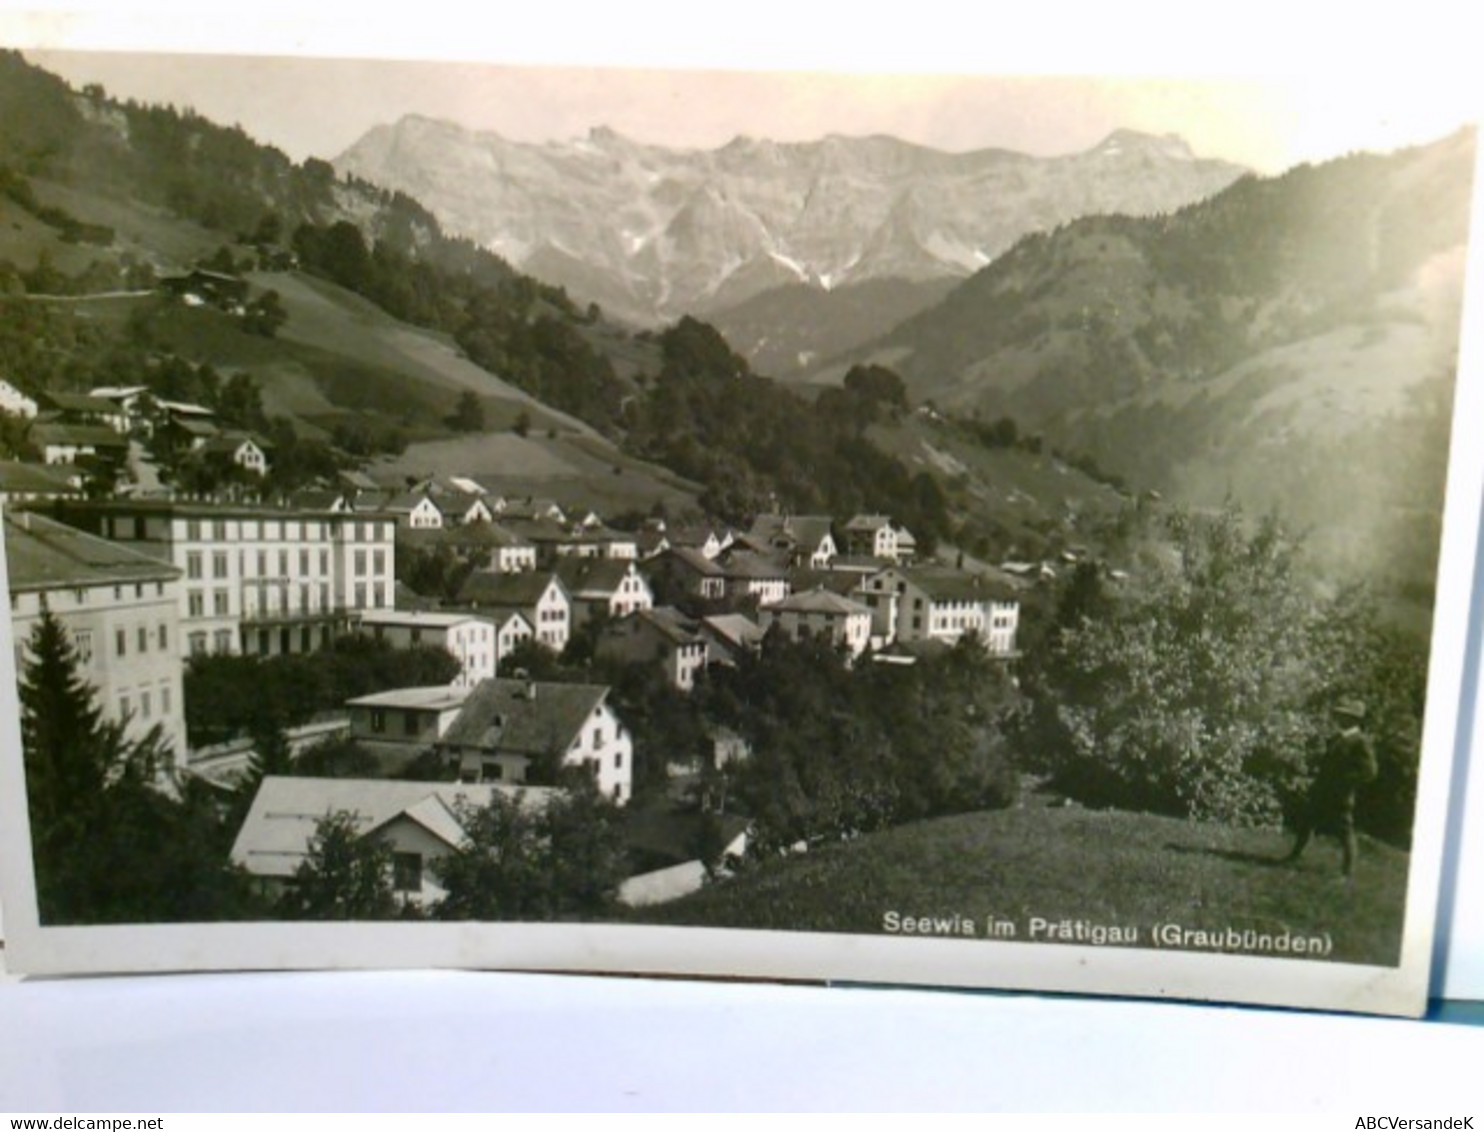 Seewis Im Prättigau / Graubünden. Alte AK S/w. Blick über Den Ort Im Tal, Gebirgspanorama, Person Rechts Unten - Seewis Im Prättigau